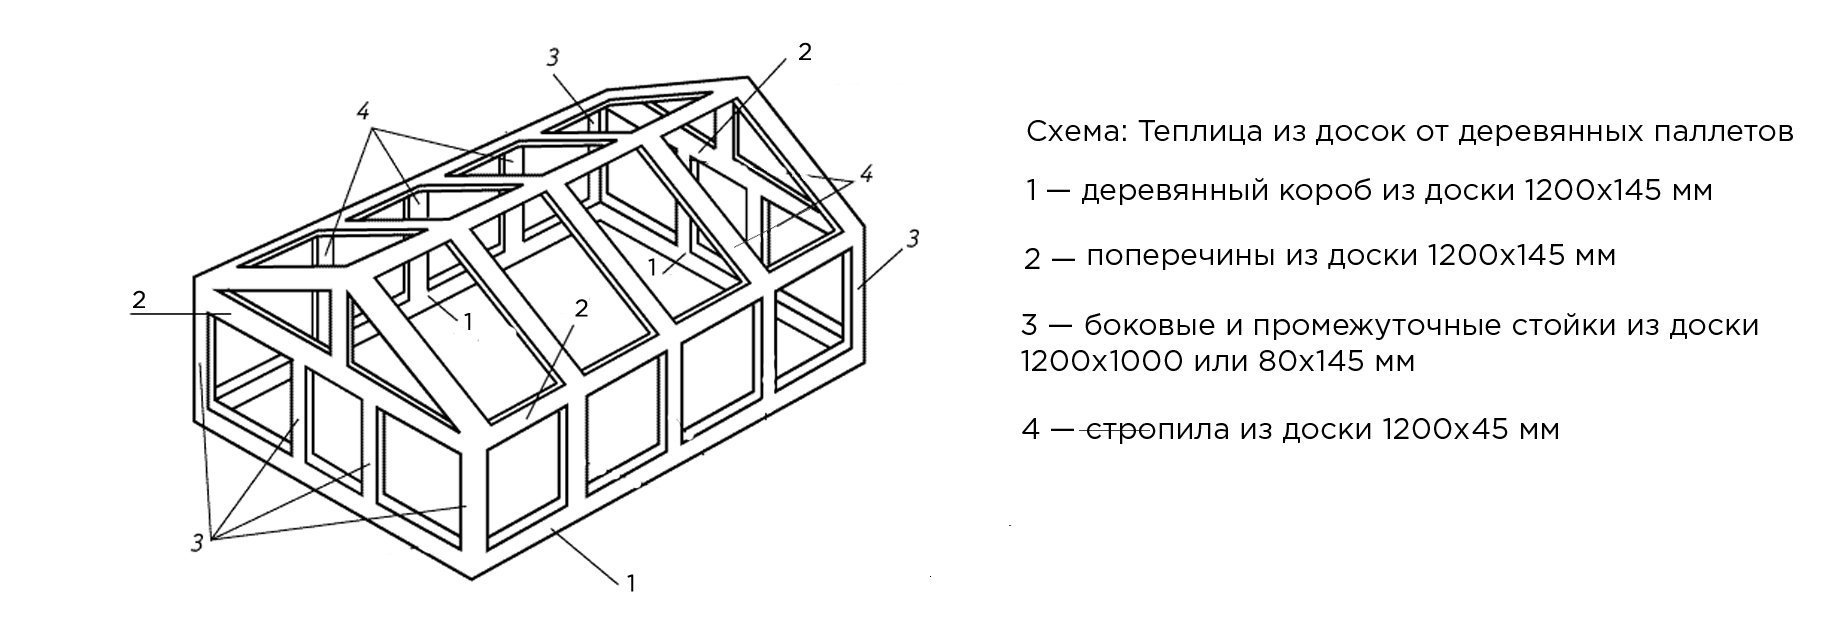 Как обустроить теплицу из поликарбоната внутри 3х8 - строй журнал dom-seliger.ru